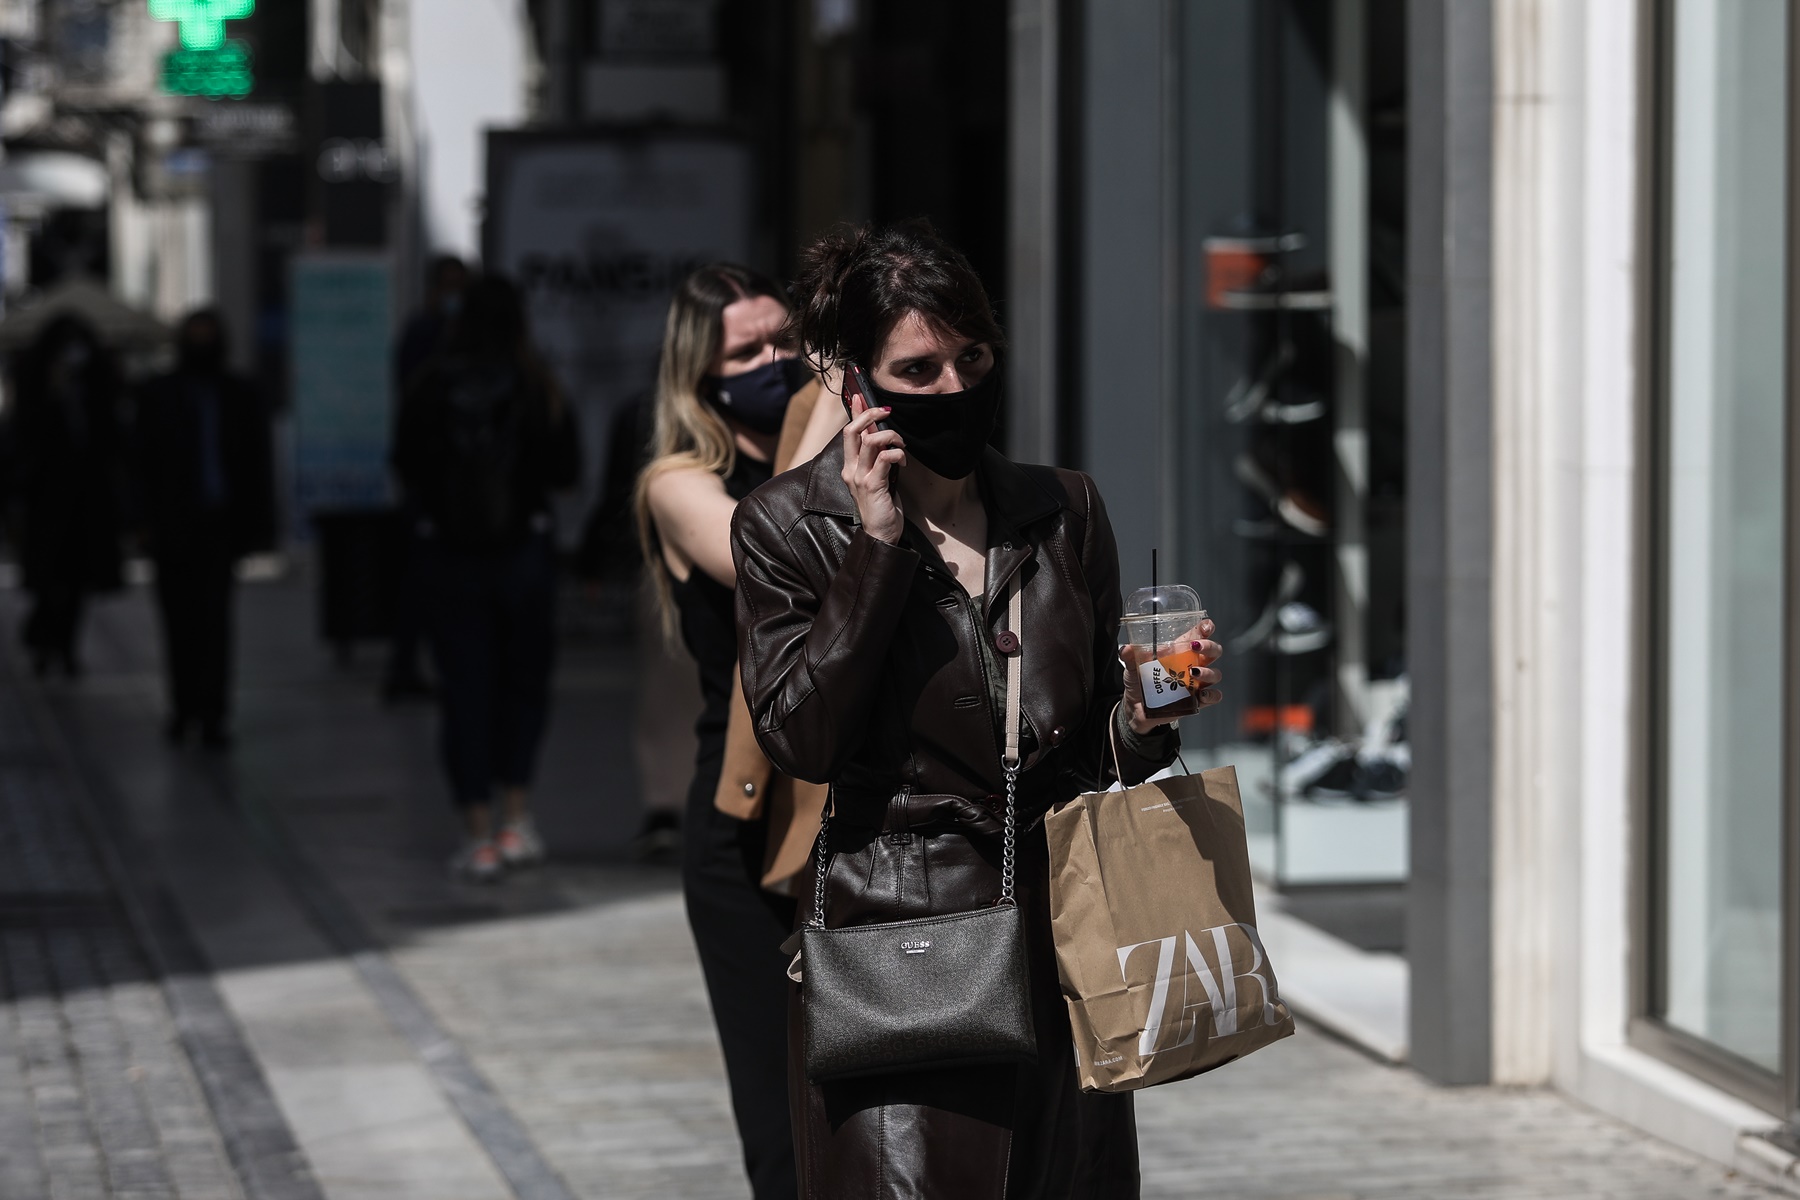 Άρση μέτρων Ελλάδα: Αποφάσεις για πολυκαταστήματα, λιανεμπόριο χωρίς SMS